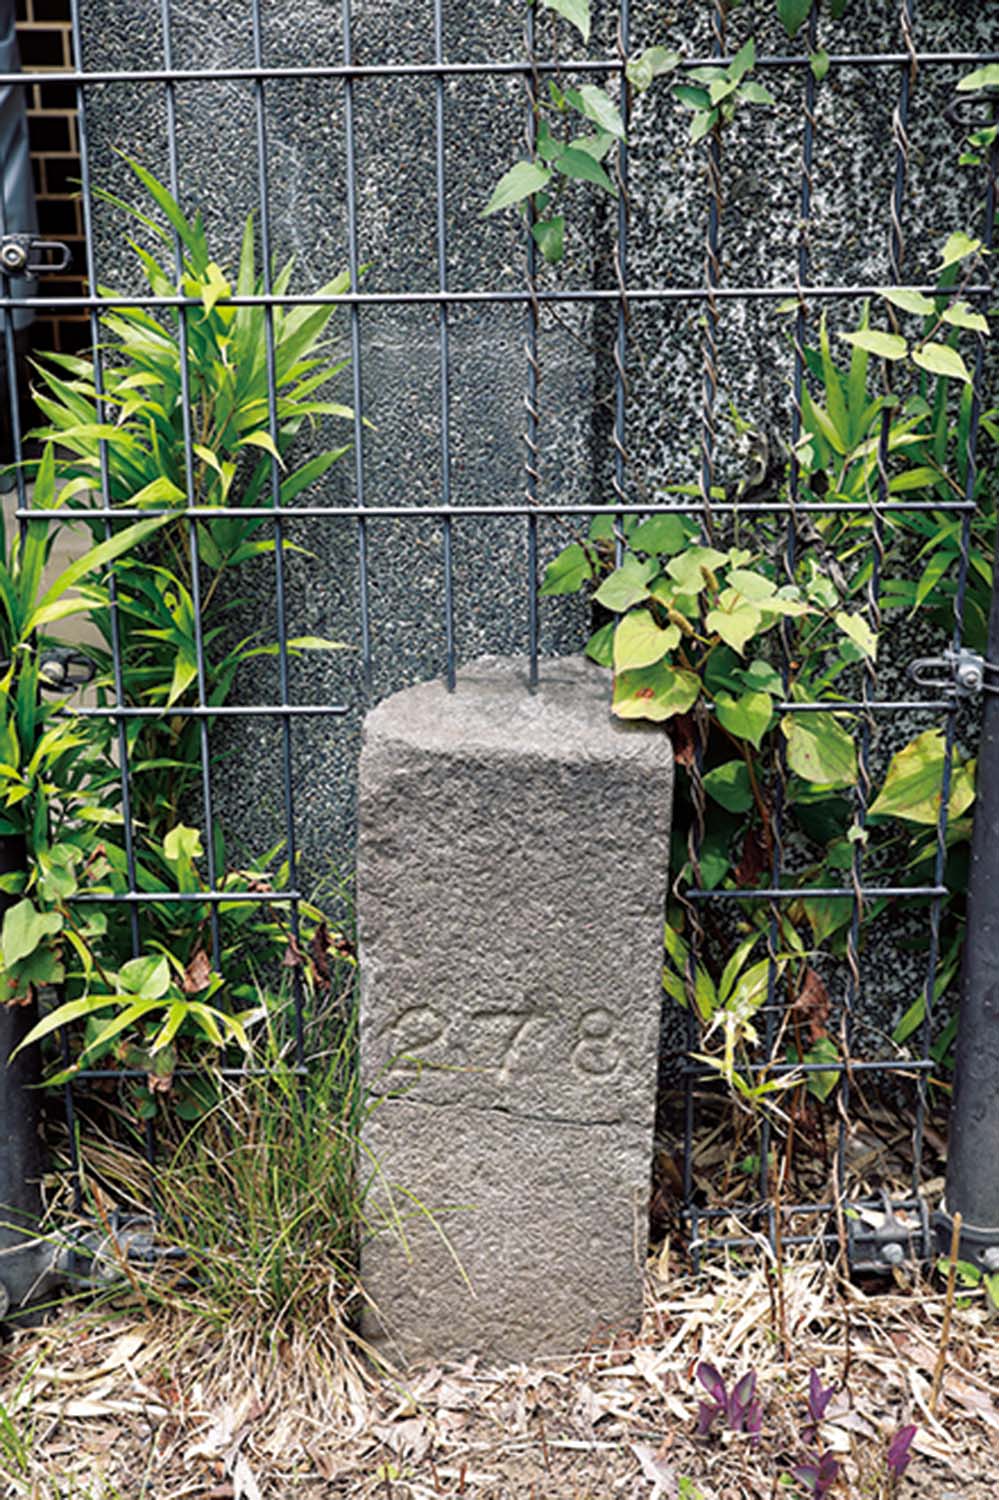 豊島公園に残る陸軍の境界石。ここには兵器工場と石神井川をつなぐ掘割「豊島ドッグ」があった。